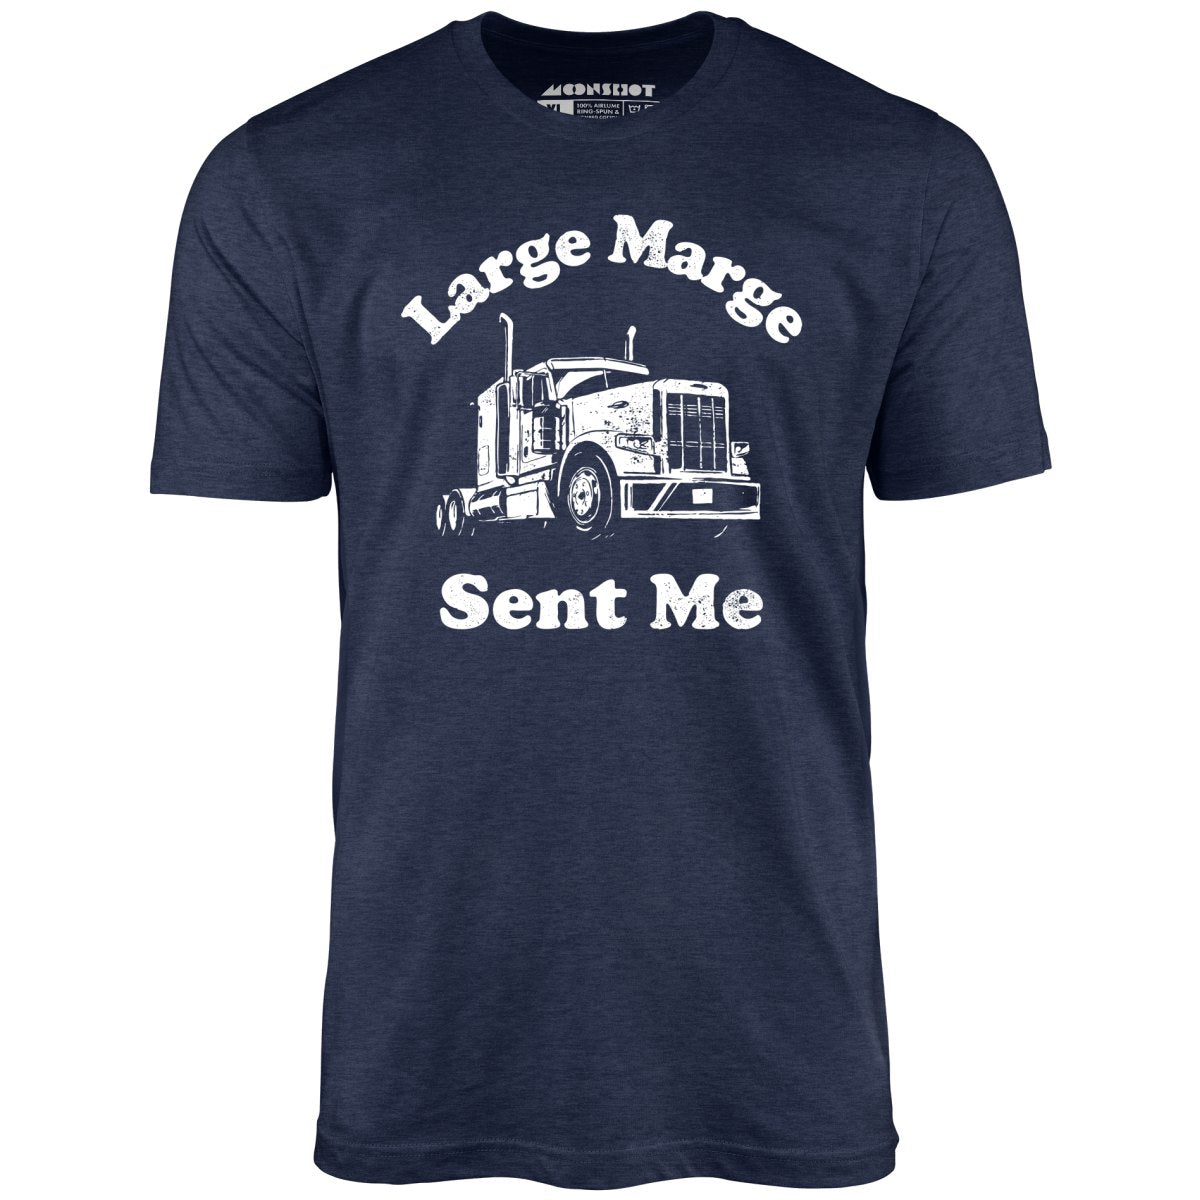 Large Marge Sent Me - Unisex T-Shirt